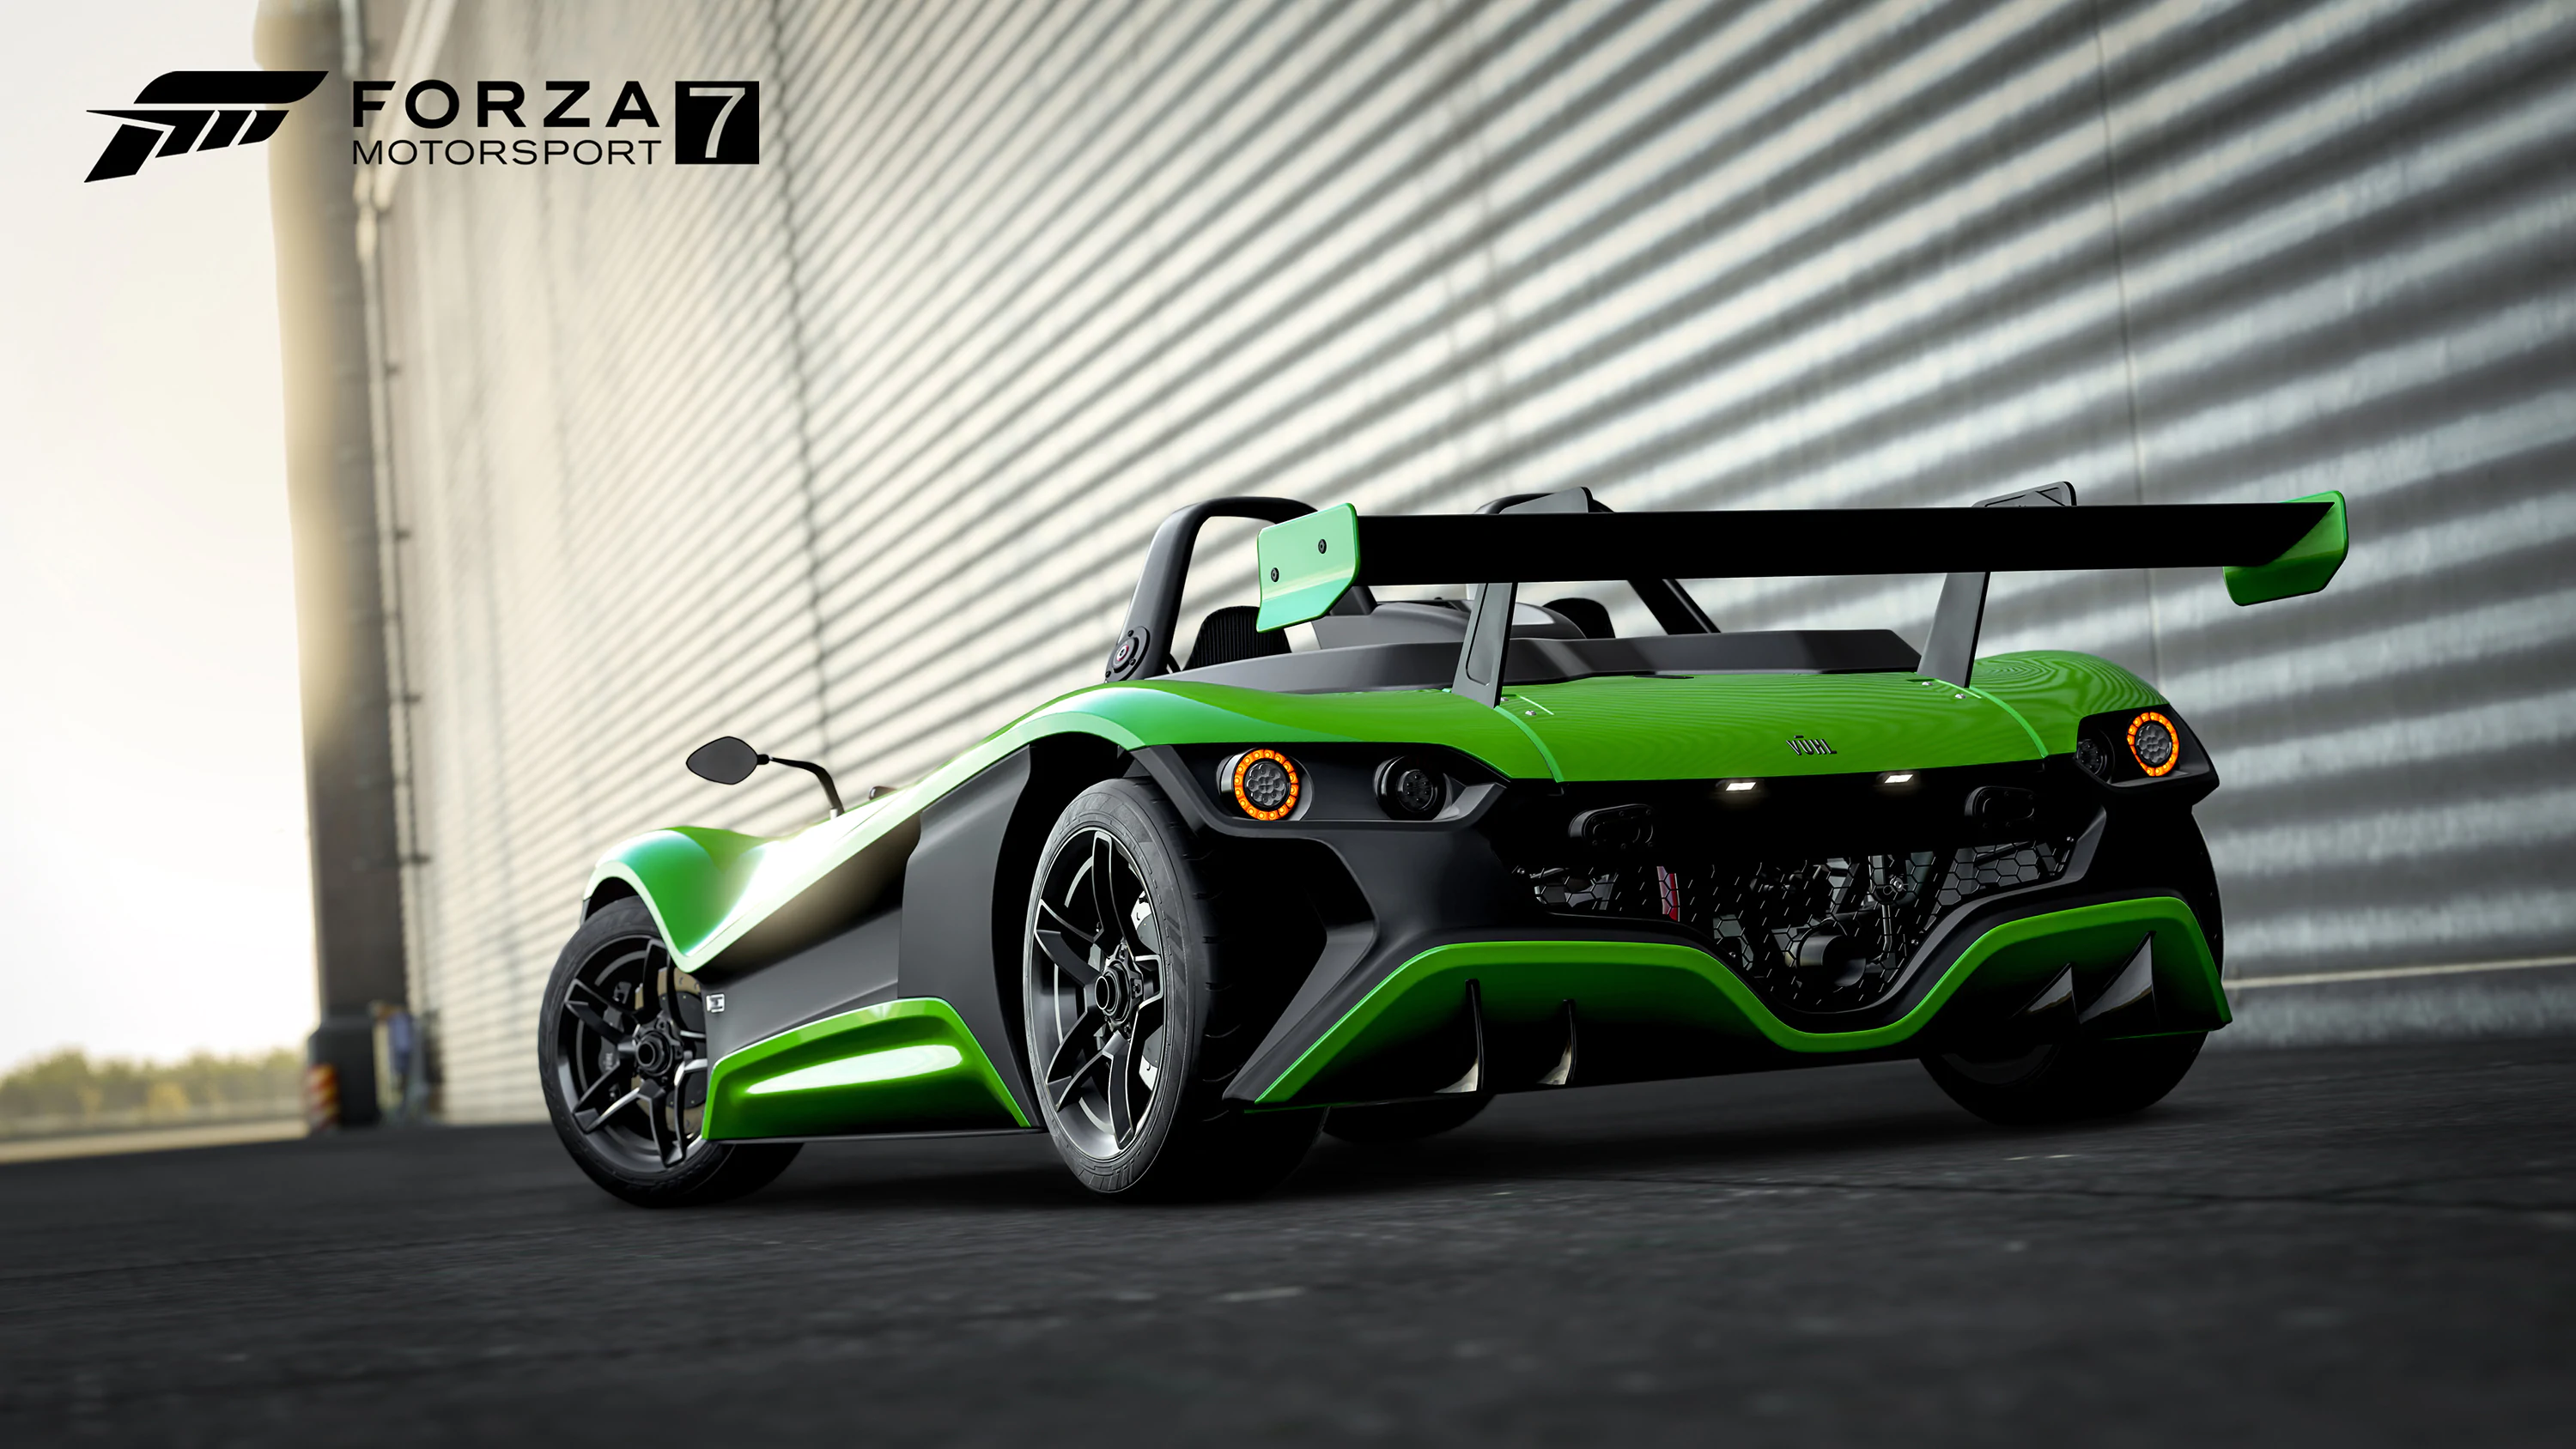 近日，微软旗下的竞速游戏《极限竞速7（Forza Motorsport 7）》公布了游戏即将上线的新车包，此次游戏官方和BBC著名节目Top Gear进行合作，推出了这部包含法拉利812 Superfast以及迈凯伦720S等多辆著名车型的DLC。